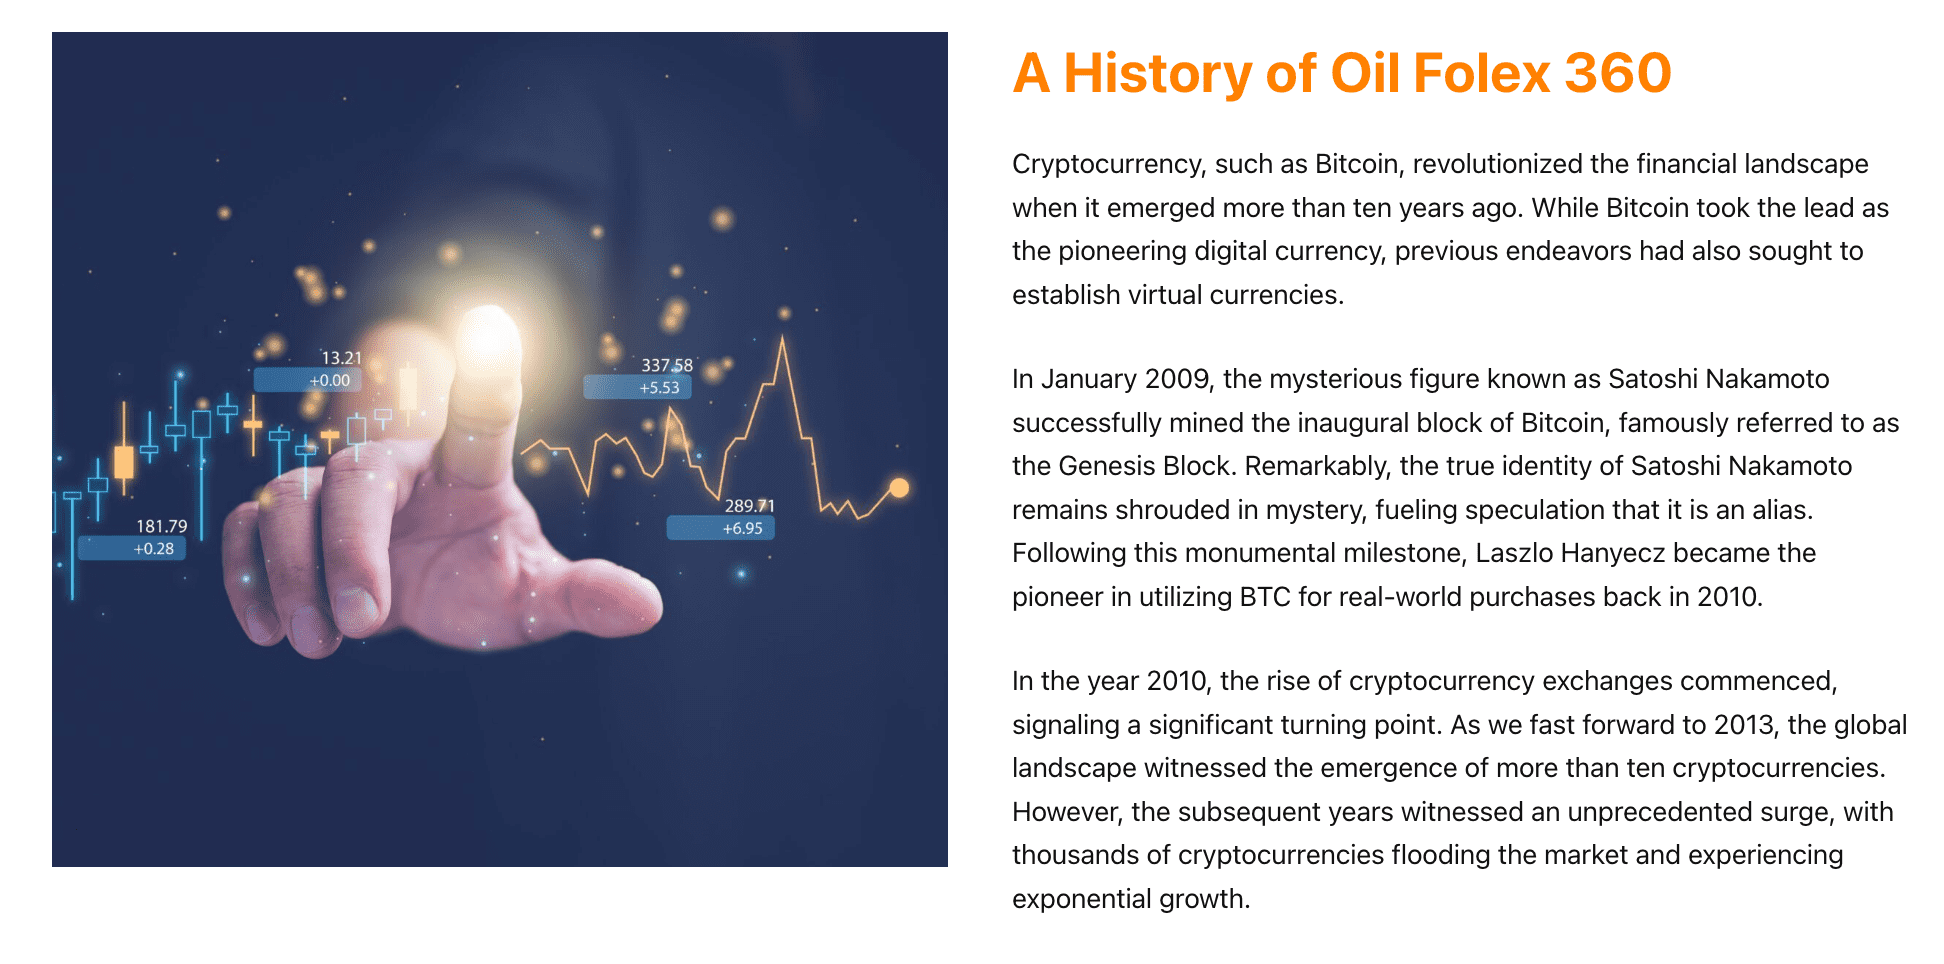 Een geschiedenis van Oil Folex 360